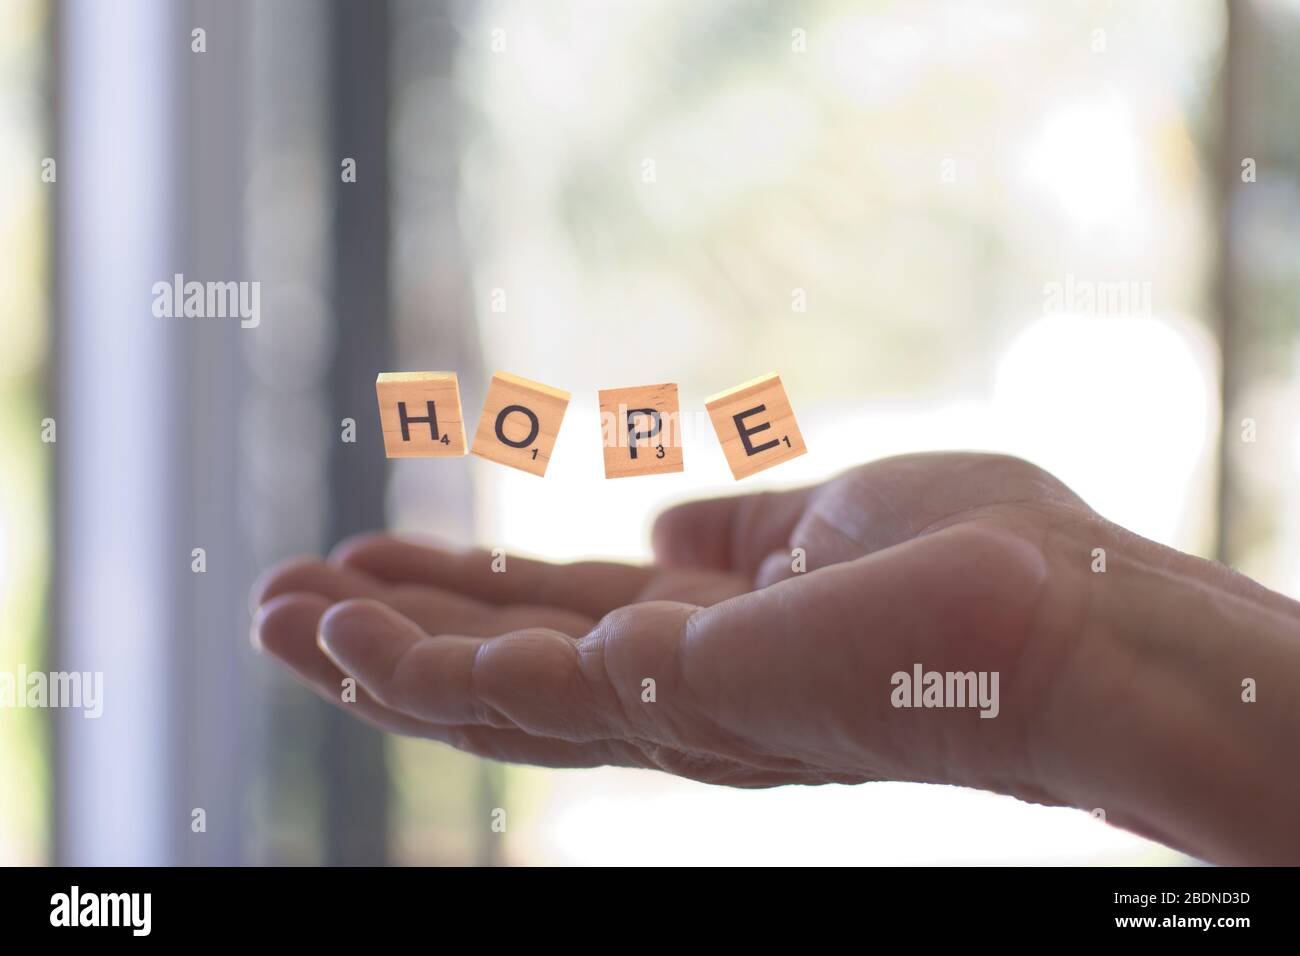 Morceaux de crabouble formant le mot espoir sur les mains - foyer sélectif. Banque D'Images